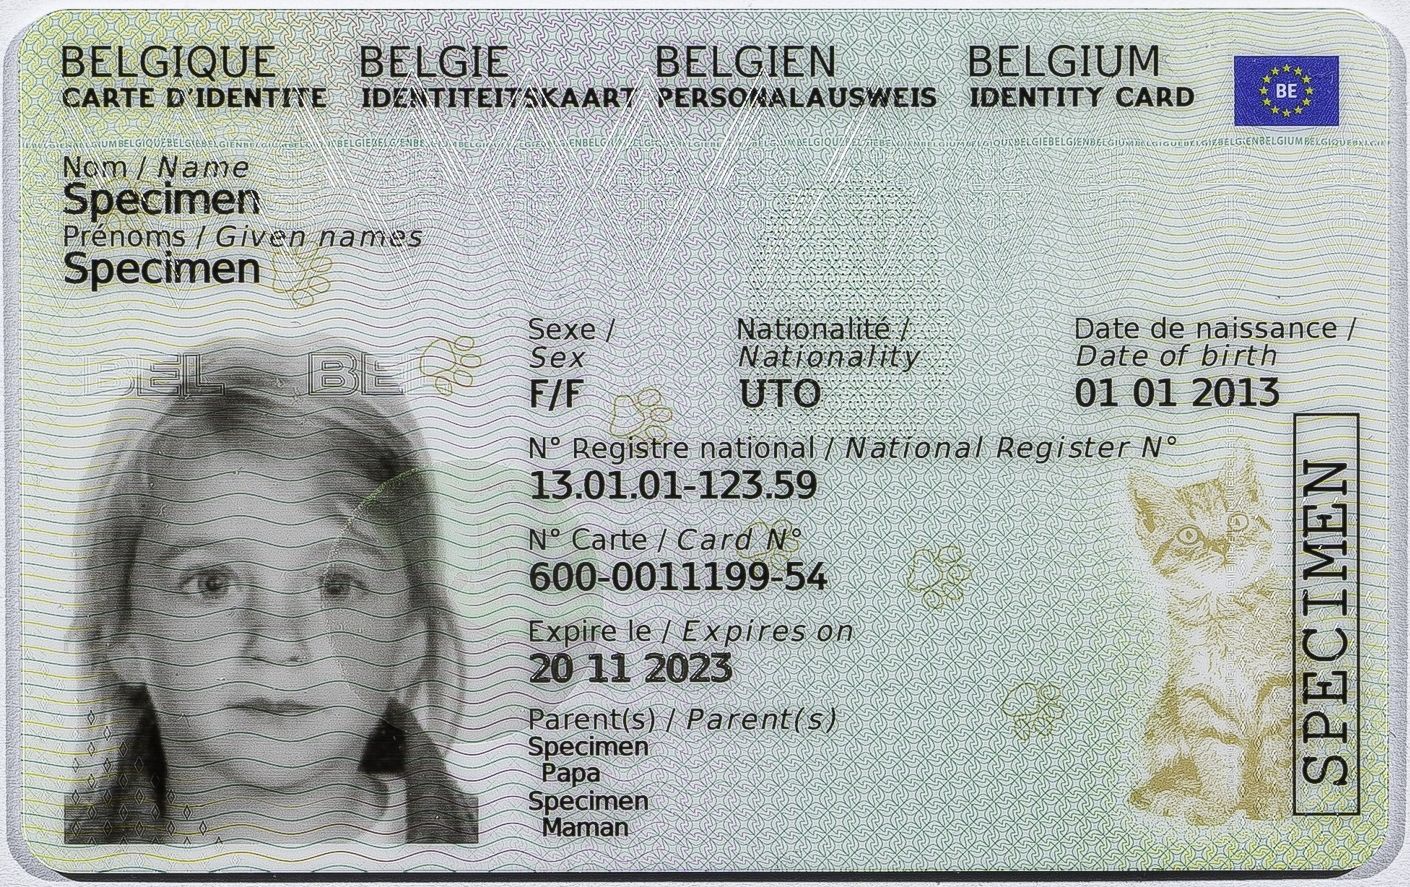 Comment créer le MRZ sur la carte identité belge (étude) ? - Quora